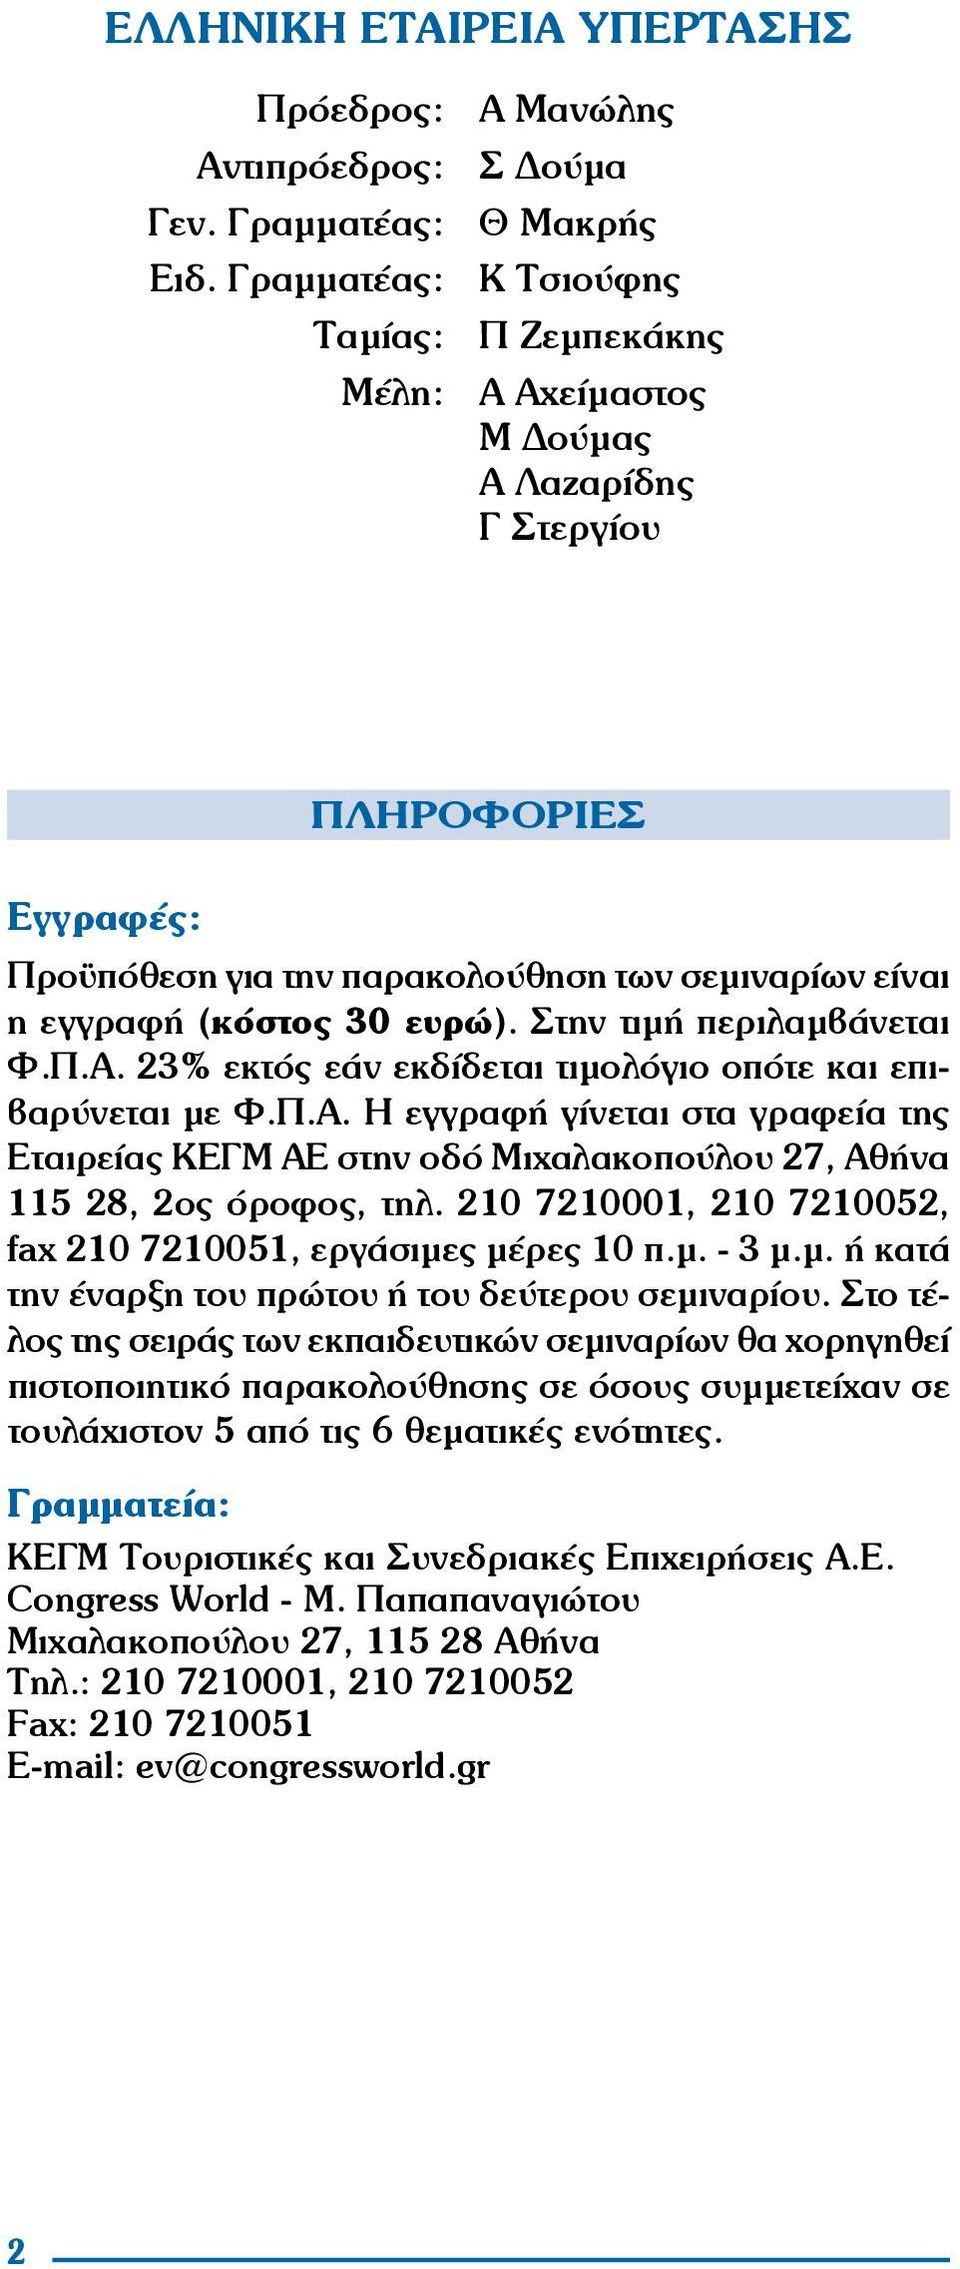 Στην τιμή περιλαμβάνεται Φ.Π.Α. 23% εκτός εάν εκδίδεται τιμολόγιο οπότε και επιβαρύνεται με φ.π.α. Η εγγραφή γίνεται στα γραφεία της Εταιρείας ΚΕΓΜ ΑΕ στην οδό Μιχαλακοπούλου 27, Αθήνα 115 28, 2ος όροφος, τηλ.